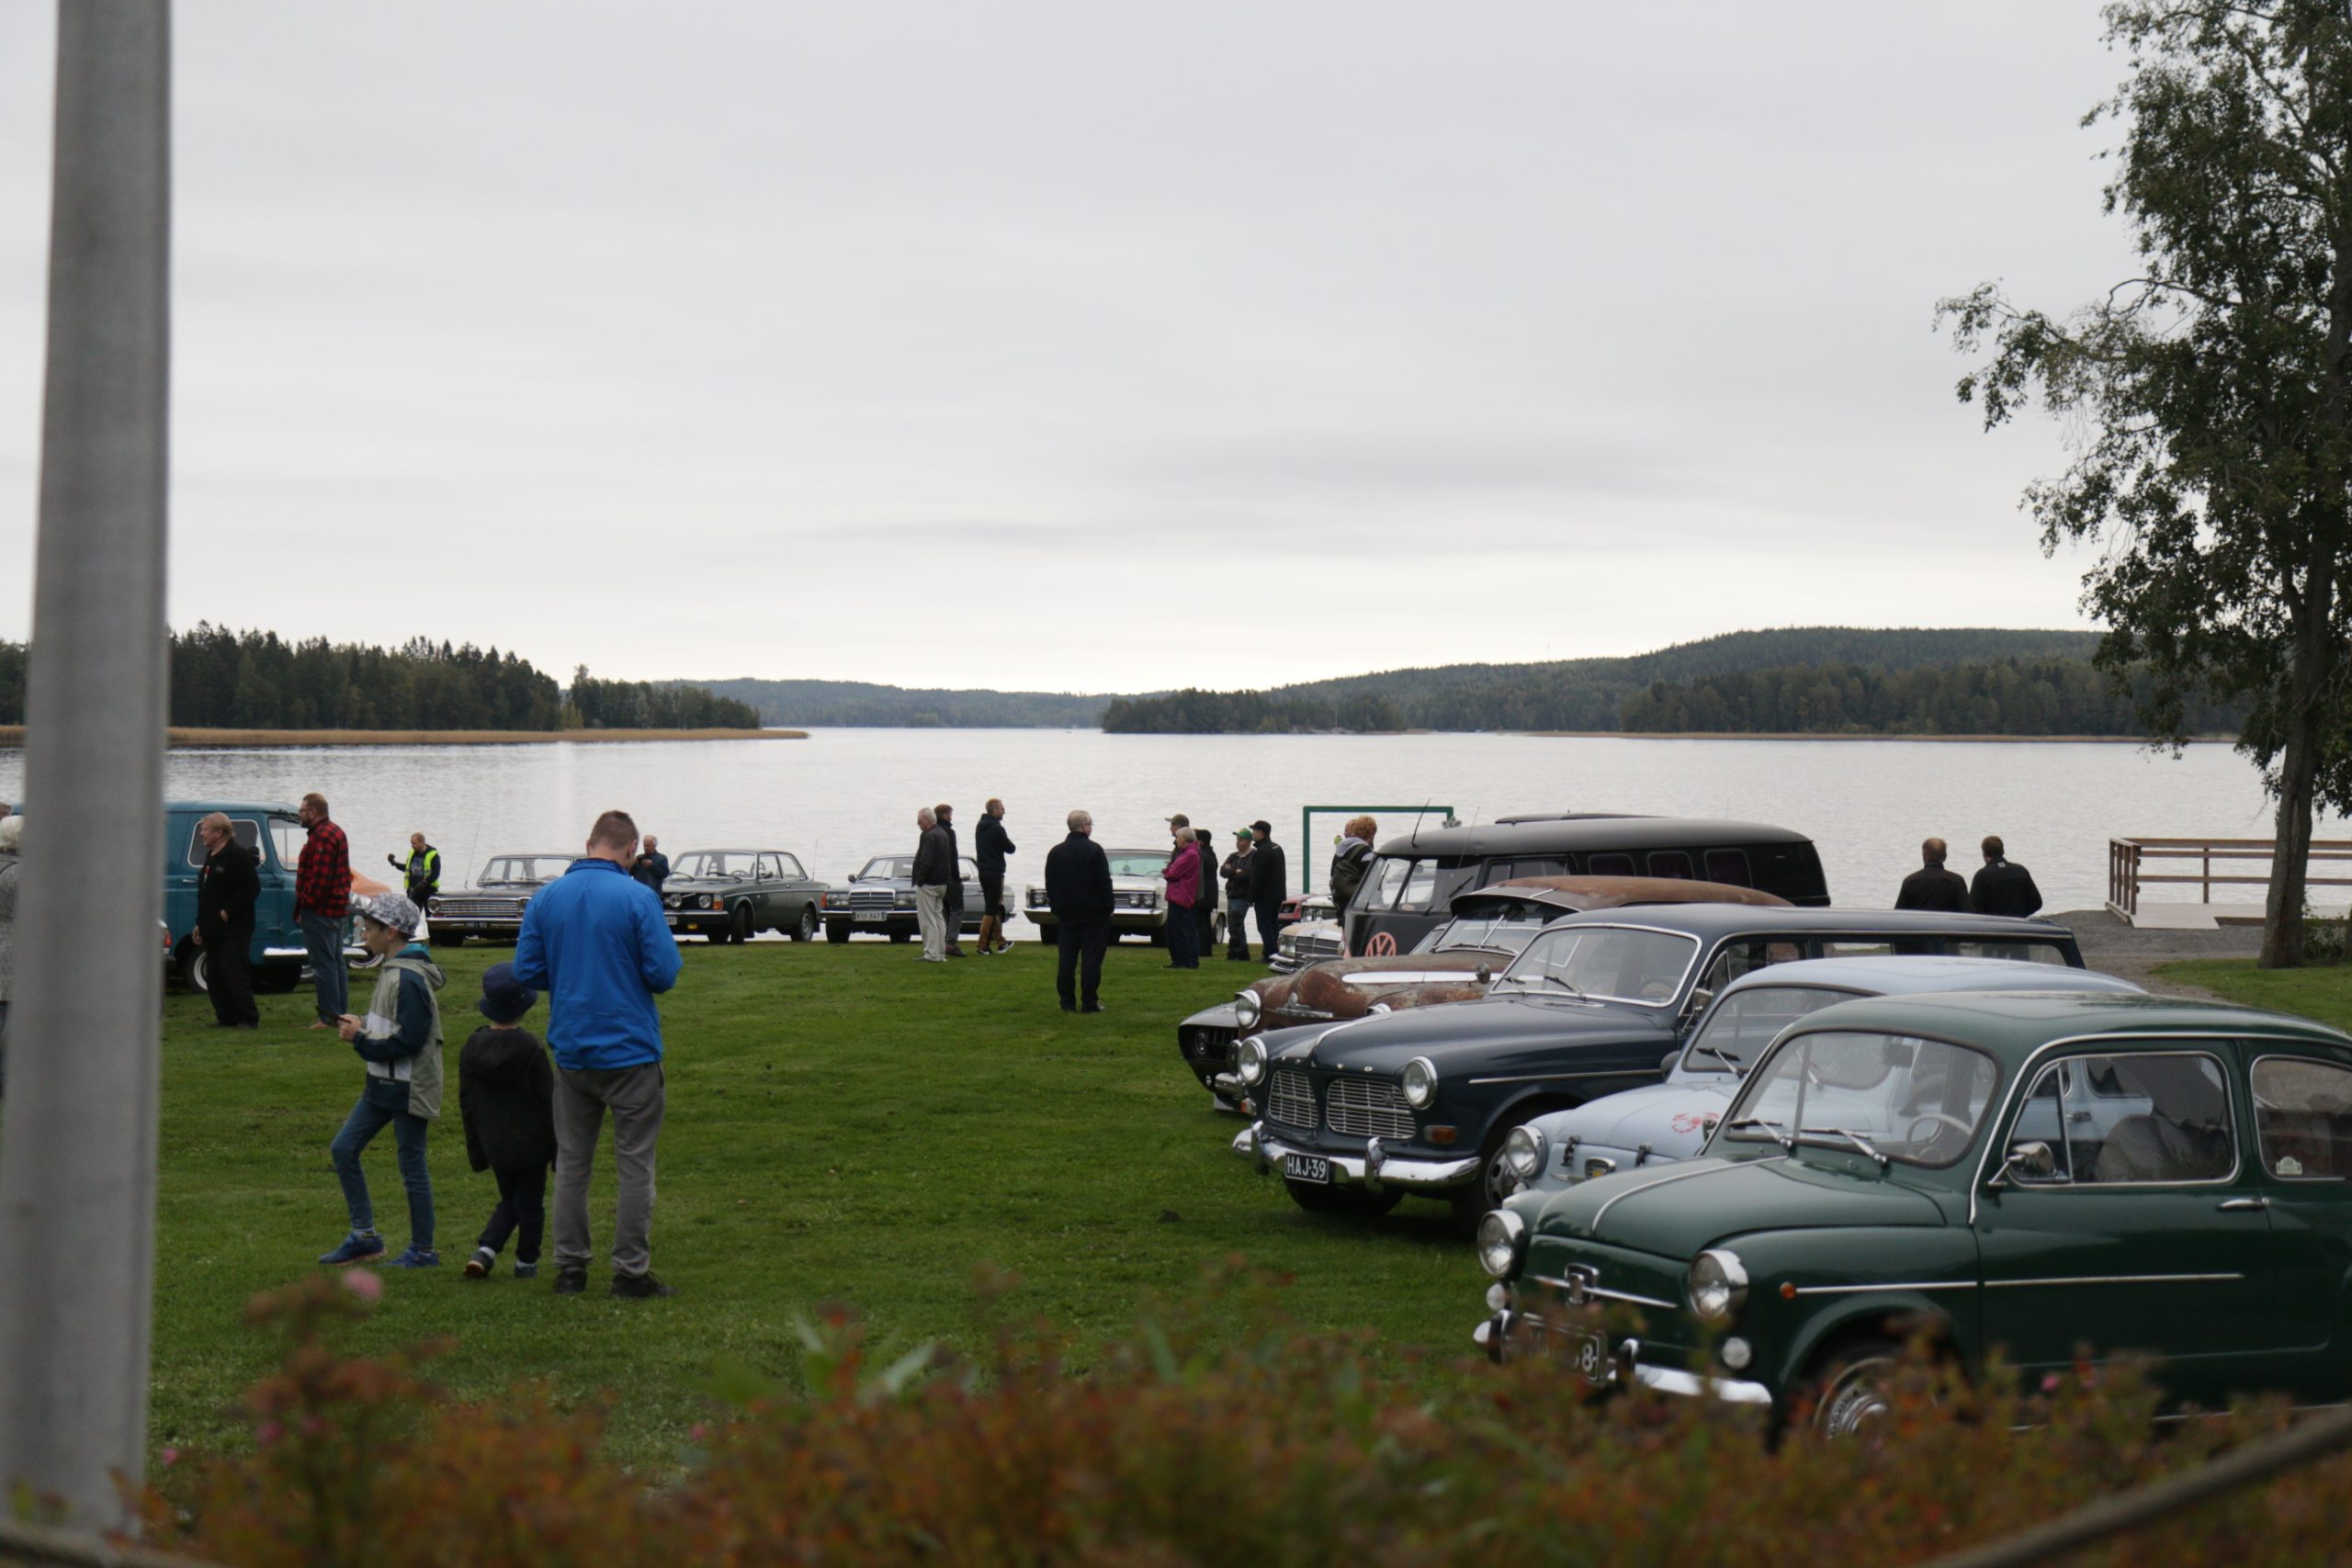 Järven rannalla olevalla nurmikkoalueella useita harrasteautoja rivissä ja ihmisiä katselemassa niitä.